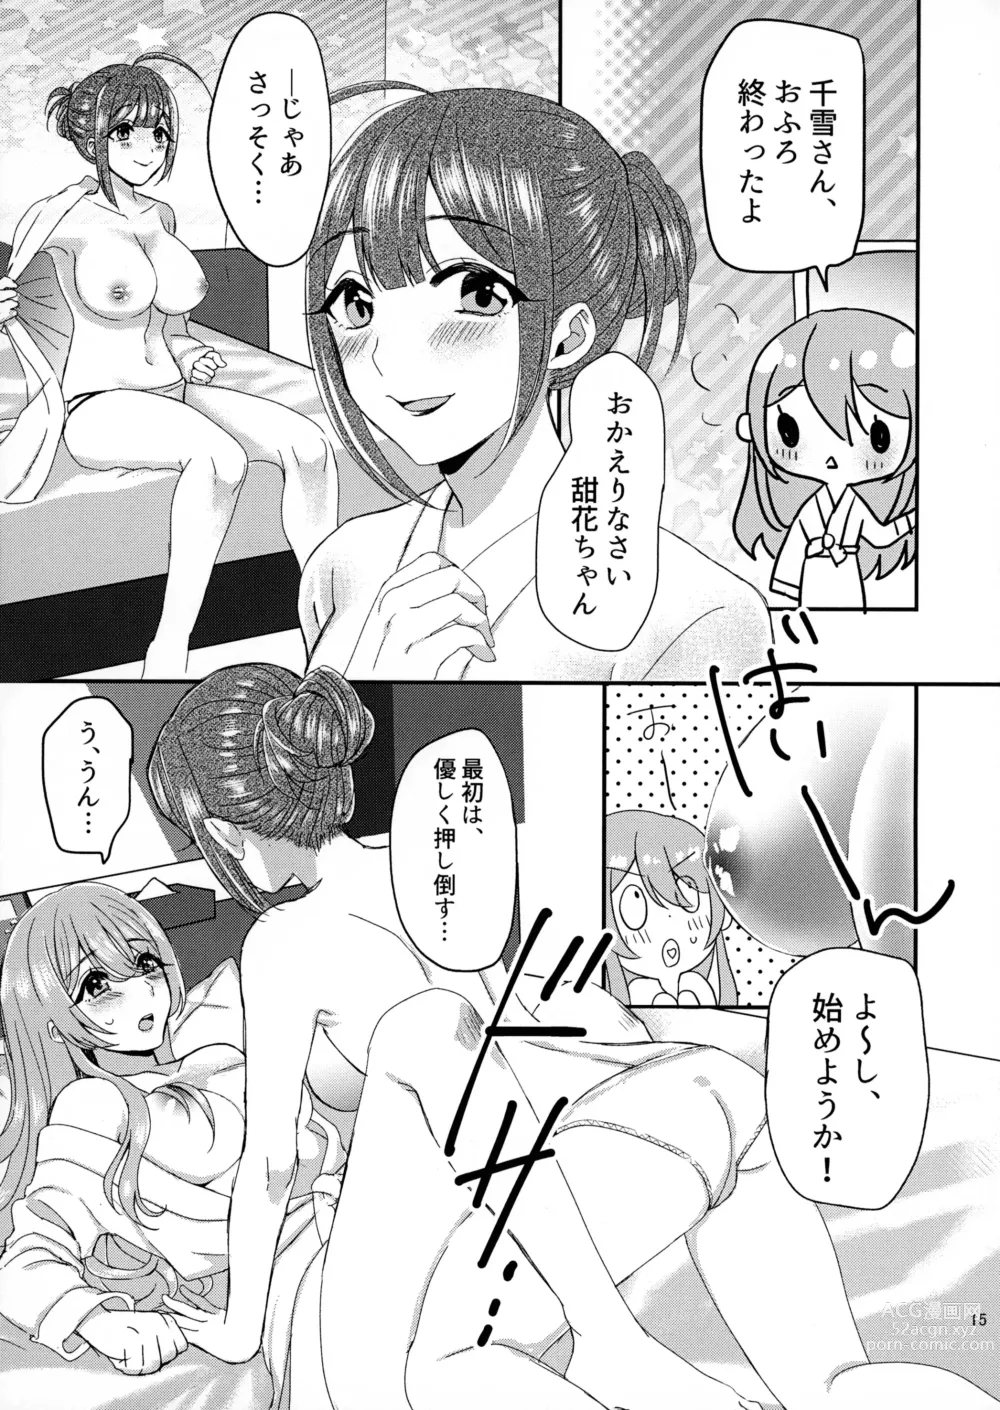 Page 14 of doujinshi Tenka to Chiyuki no Himitsu Lesson